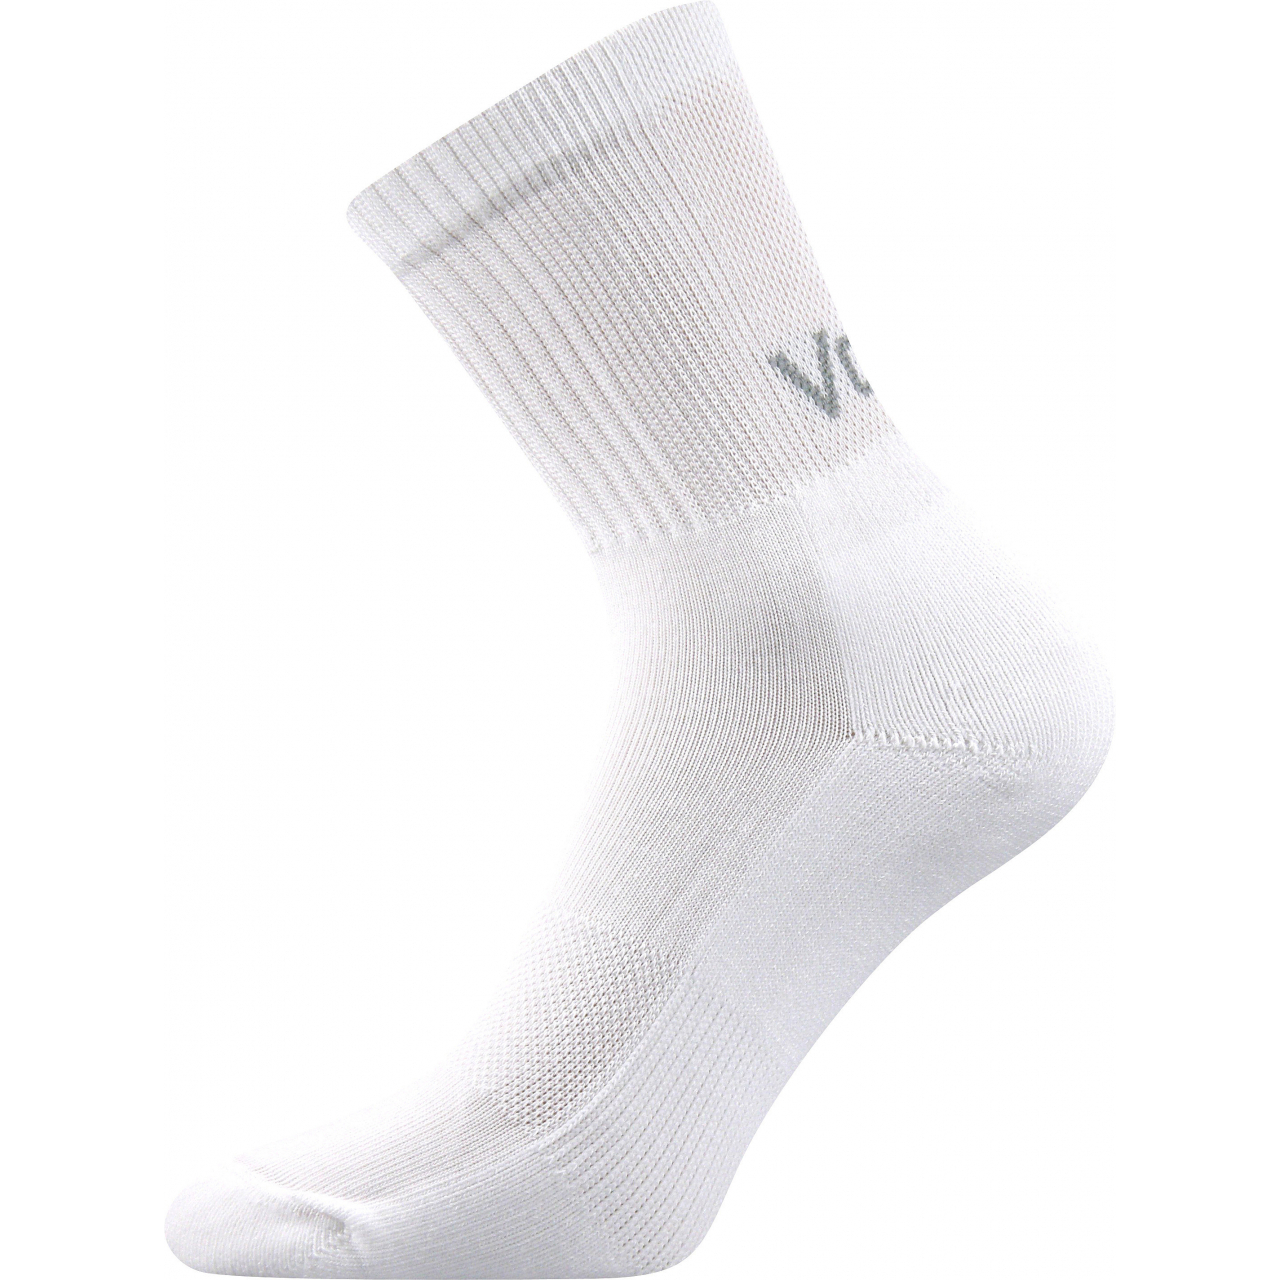 Ponožky sportovní unisex Voxx Mystic - bílé, 35-38